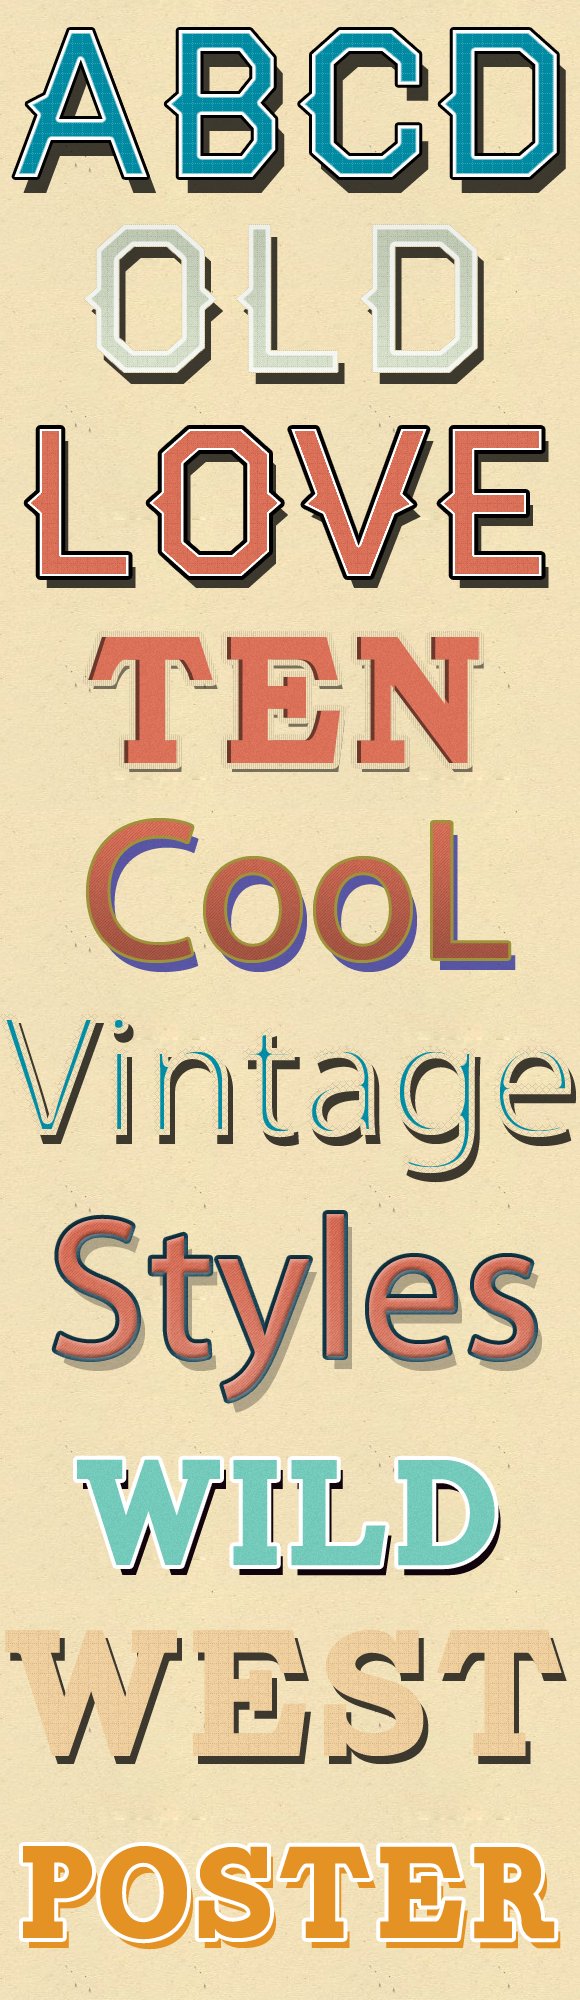 Retro Vintage Text Styles Photoshoppreview image.